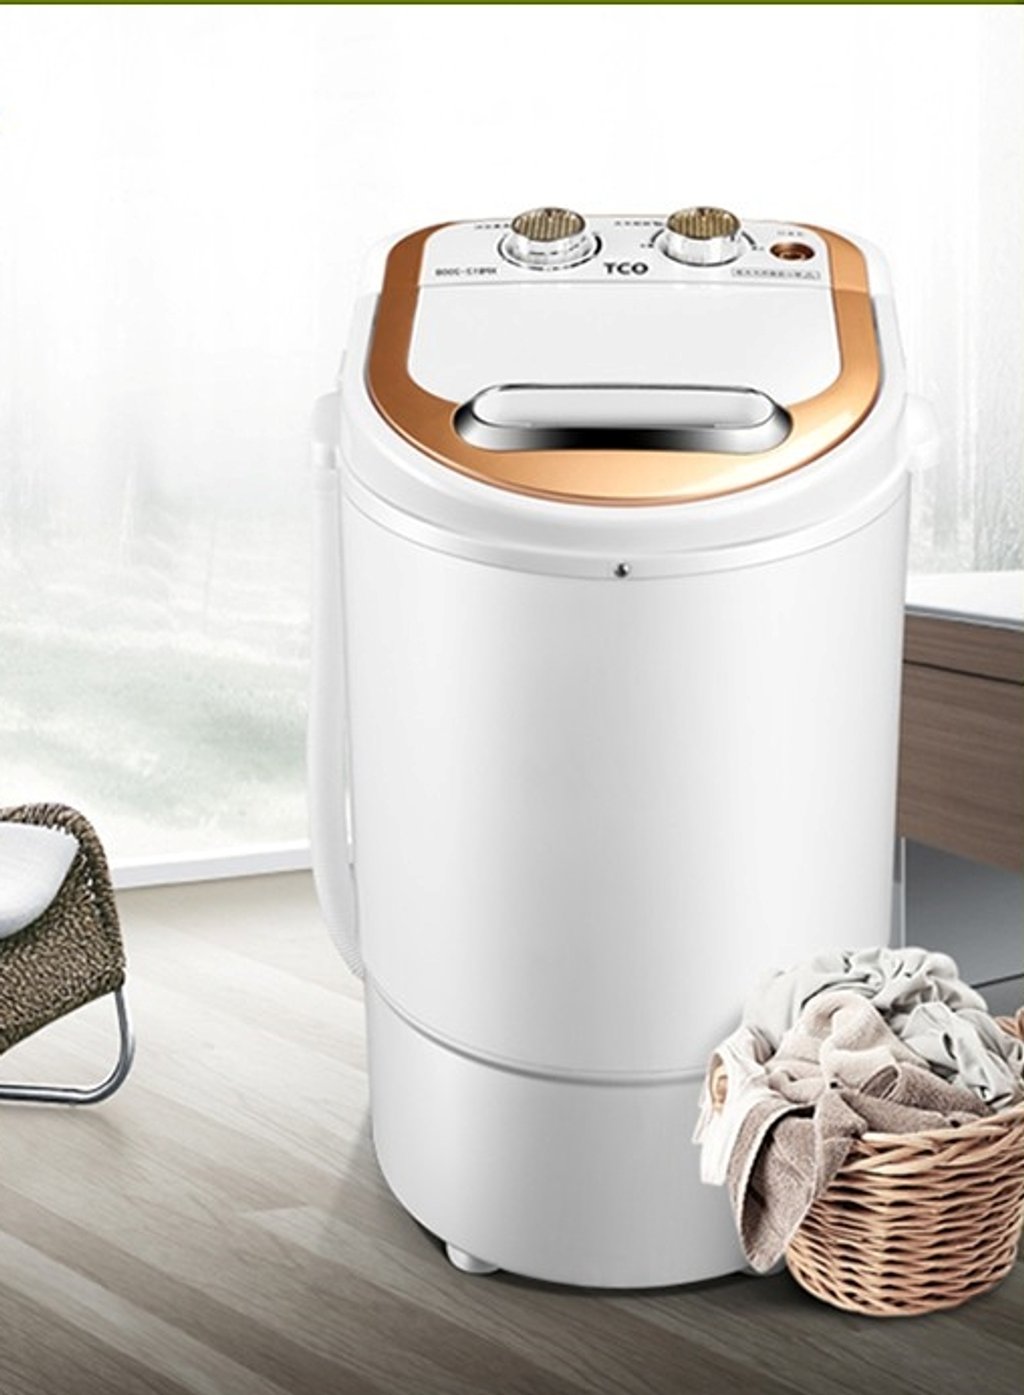 Máy giặt mini có tia UV khử khuẩn của hãng TCO (Đài Loan) – Giá tham khảo: 1,2 – 1,5 triệu đồng/chiếc. Máy có kích thước 33x33x51cm, trọng lượng 4kg và công suất 260w.